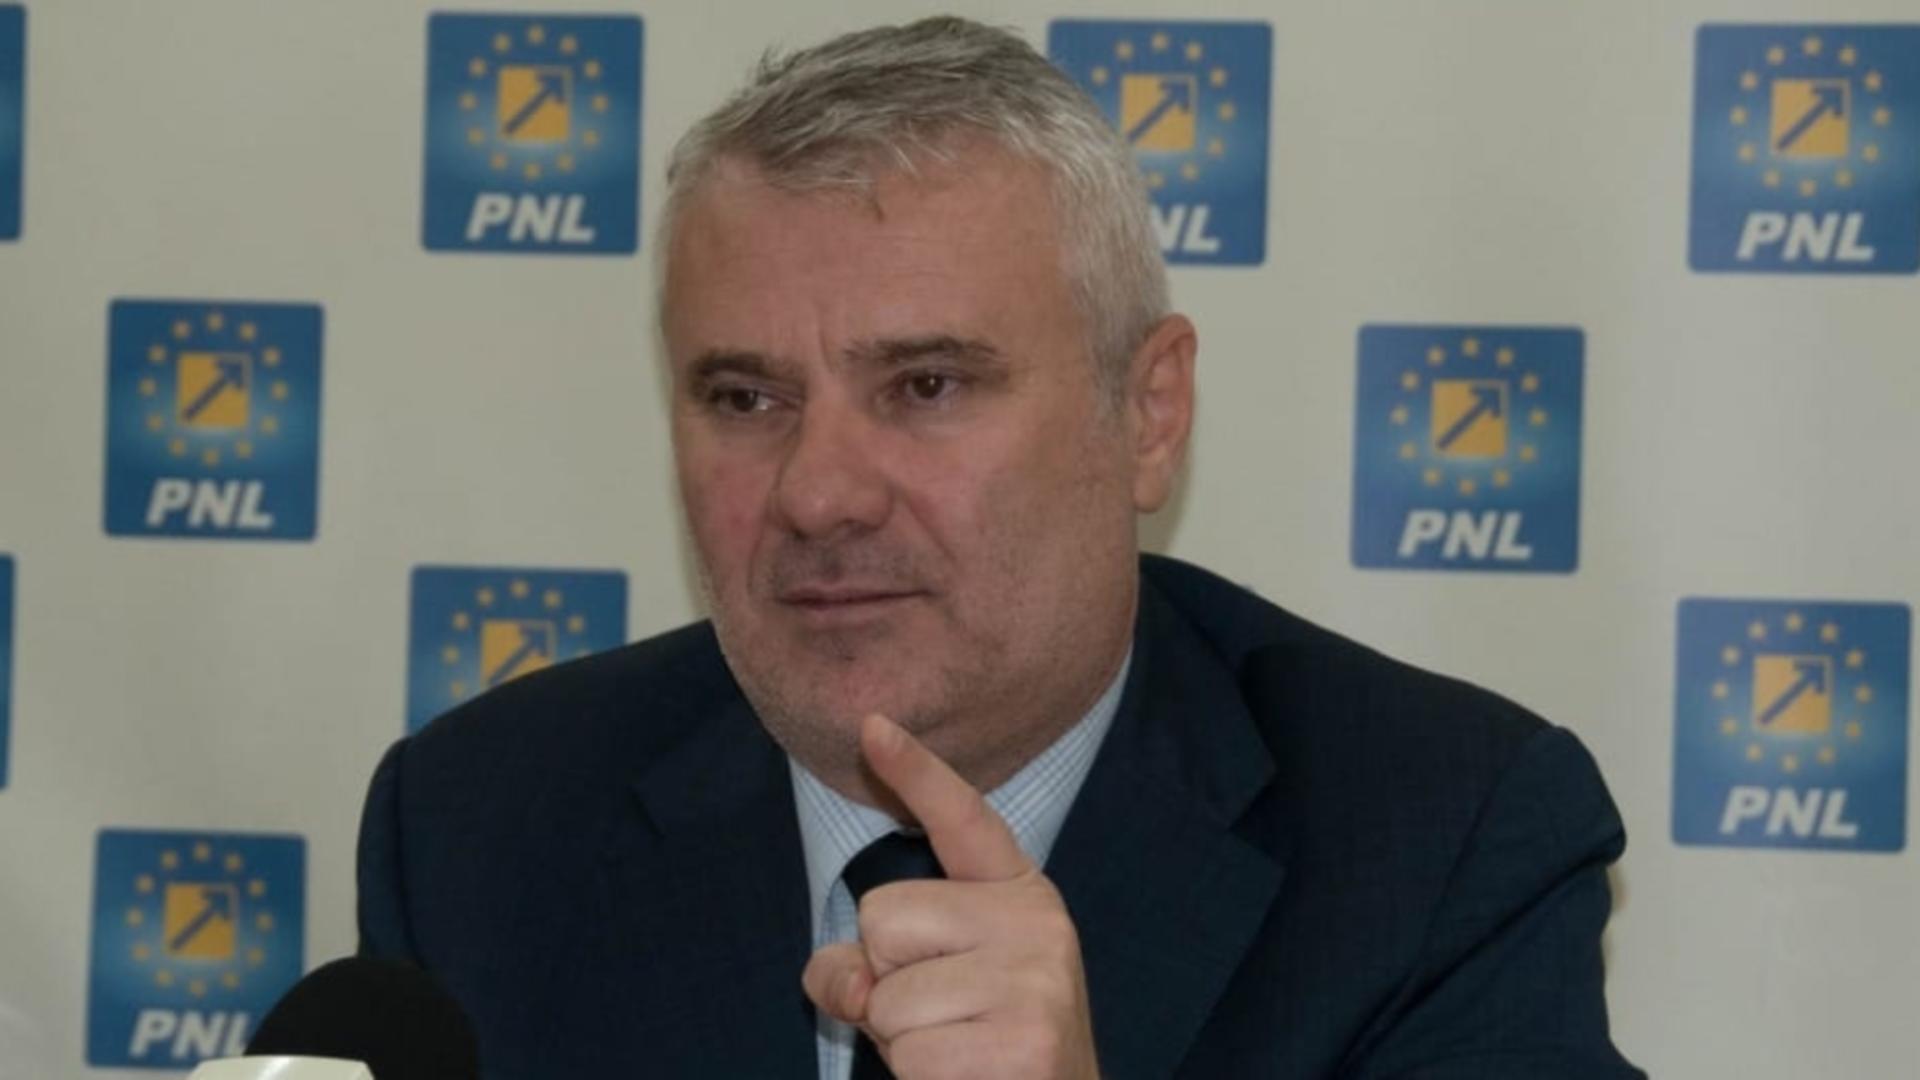 Gigel Știrbu, deputat PNL